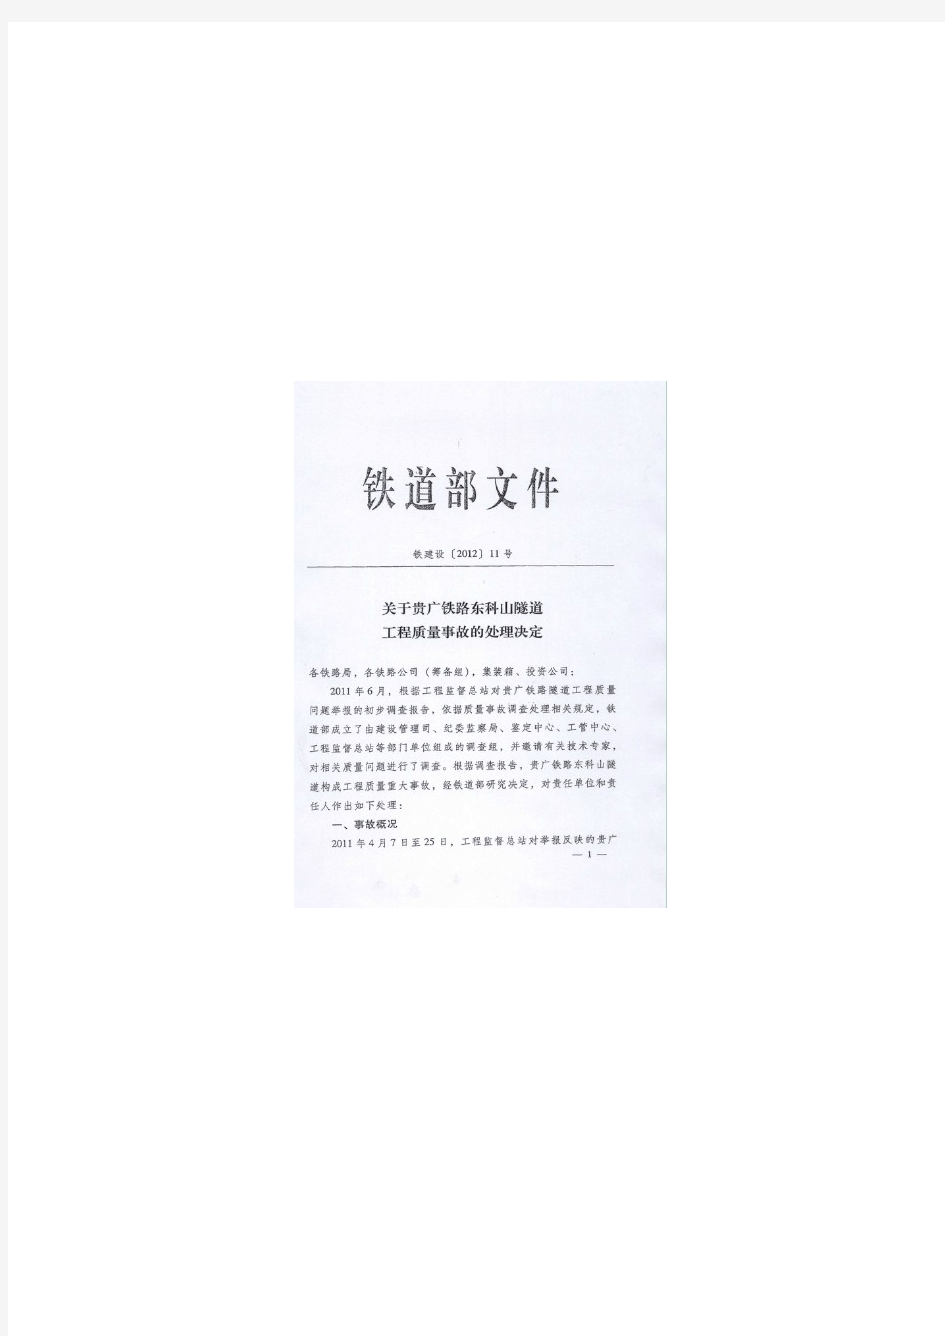 关于贵广铁路东科山隧道工程质量事故的处理决定铁建设(2012) 11号